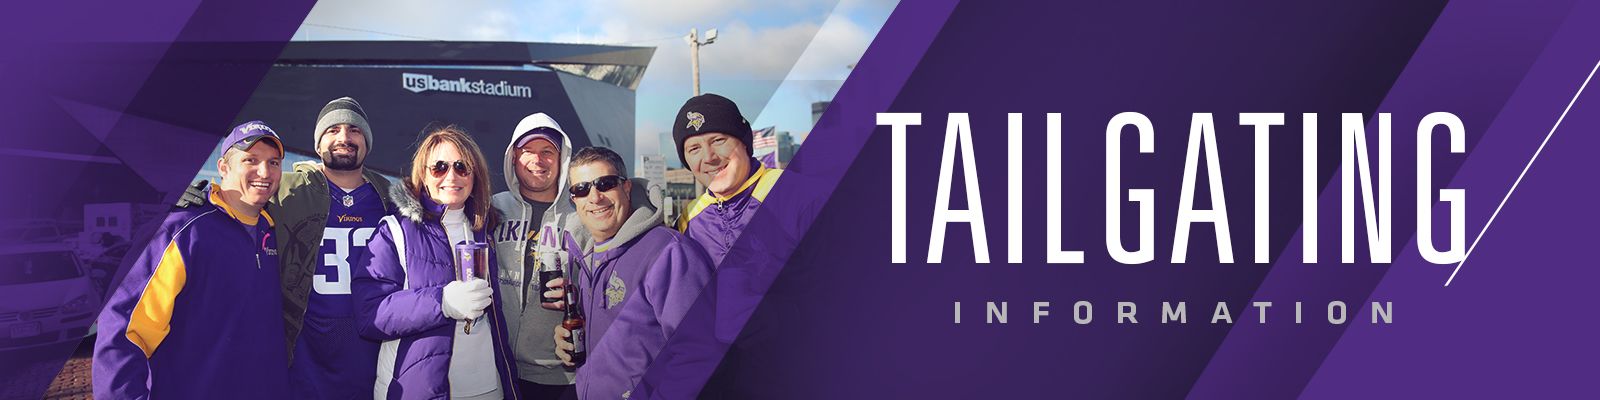 Vikings Tailgating U.S. Bank Stadium